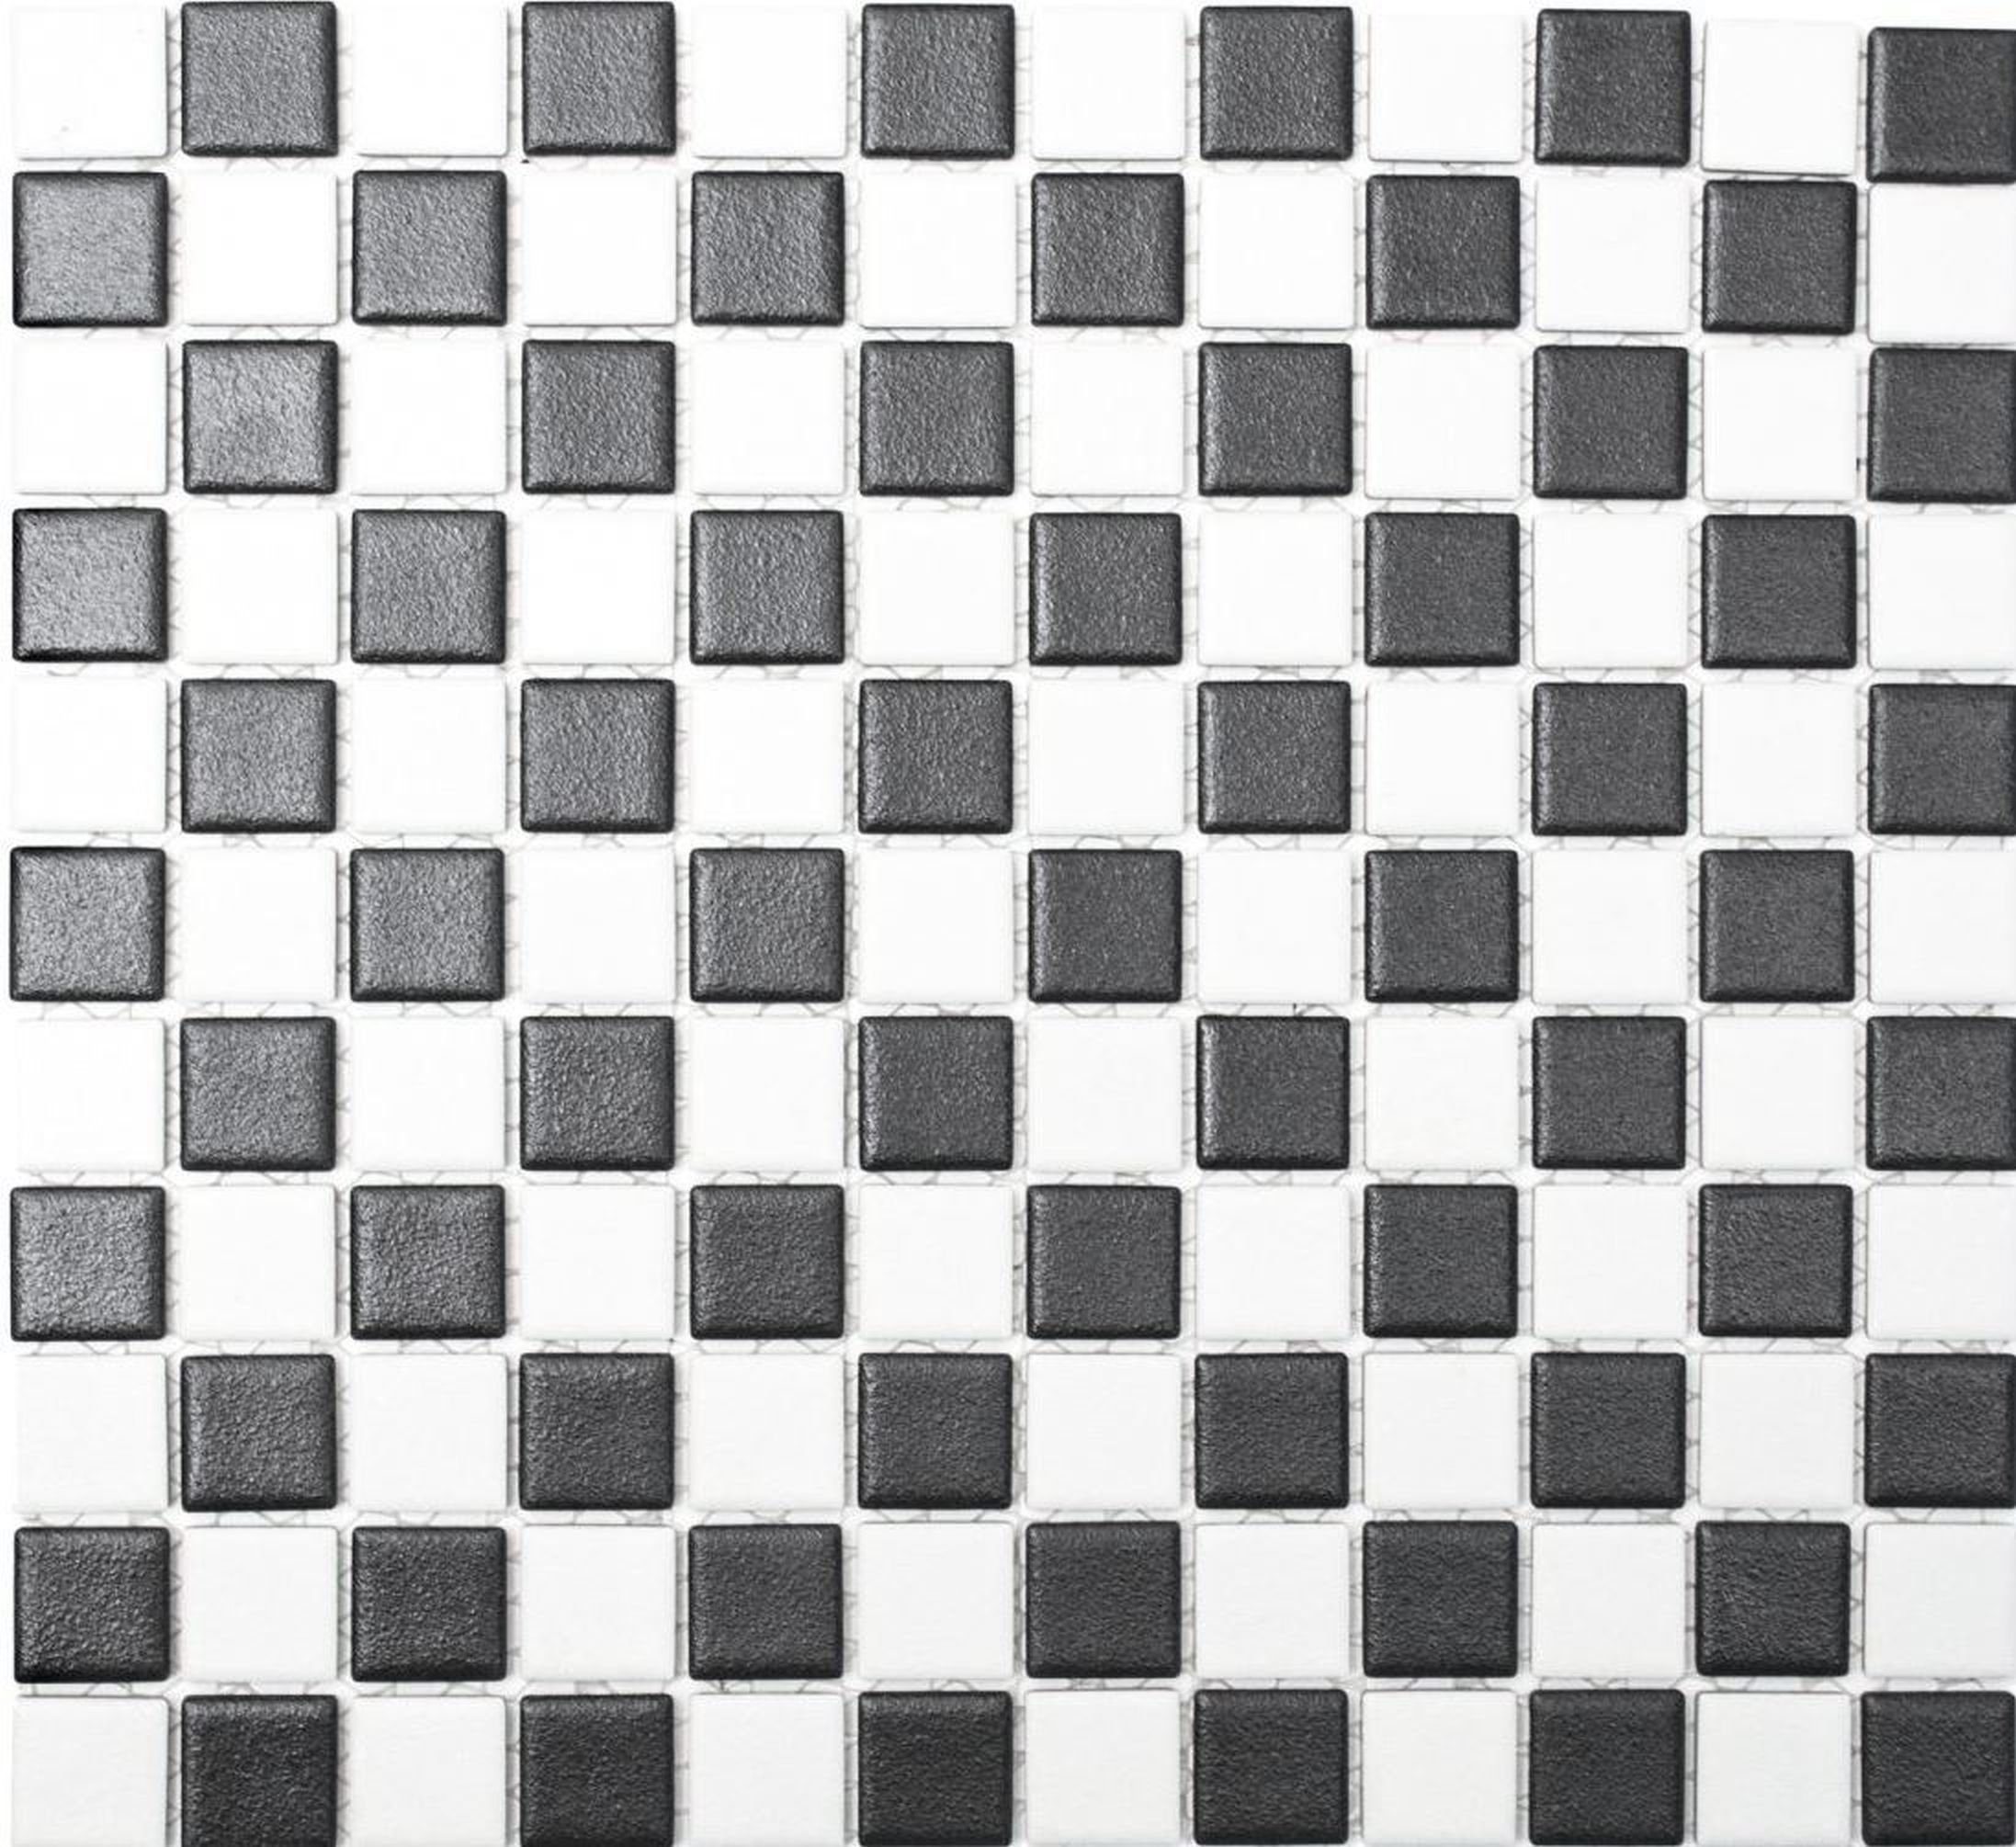 Mosani Mosaikfliesen Keramik Mosaik RUTSCHSICHER schwarz weiß matt unglasiert BODENFLIESE